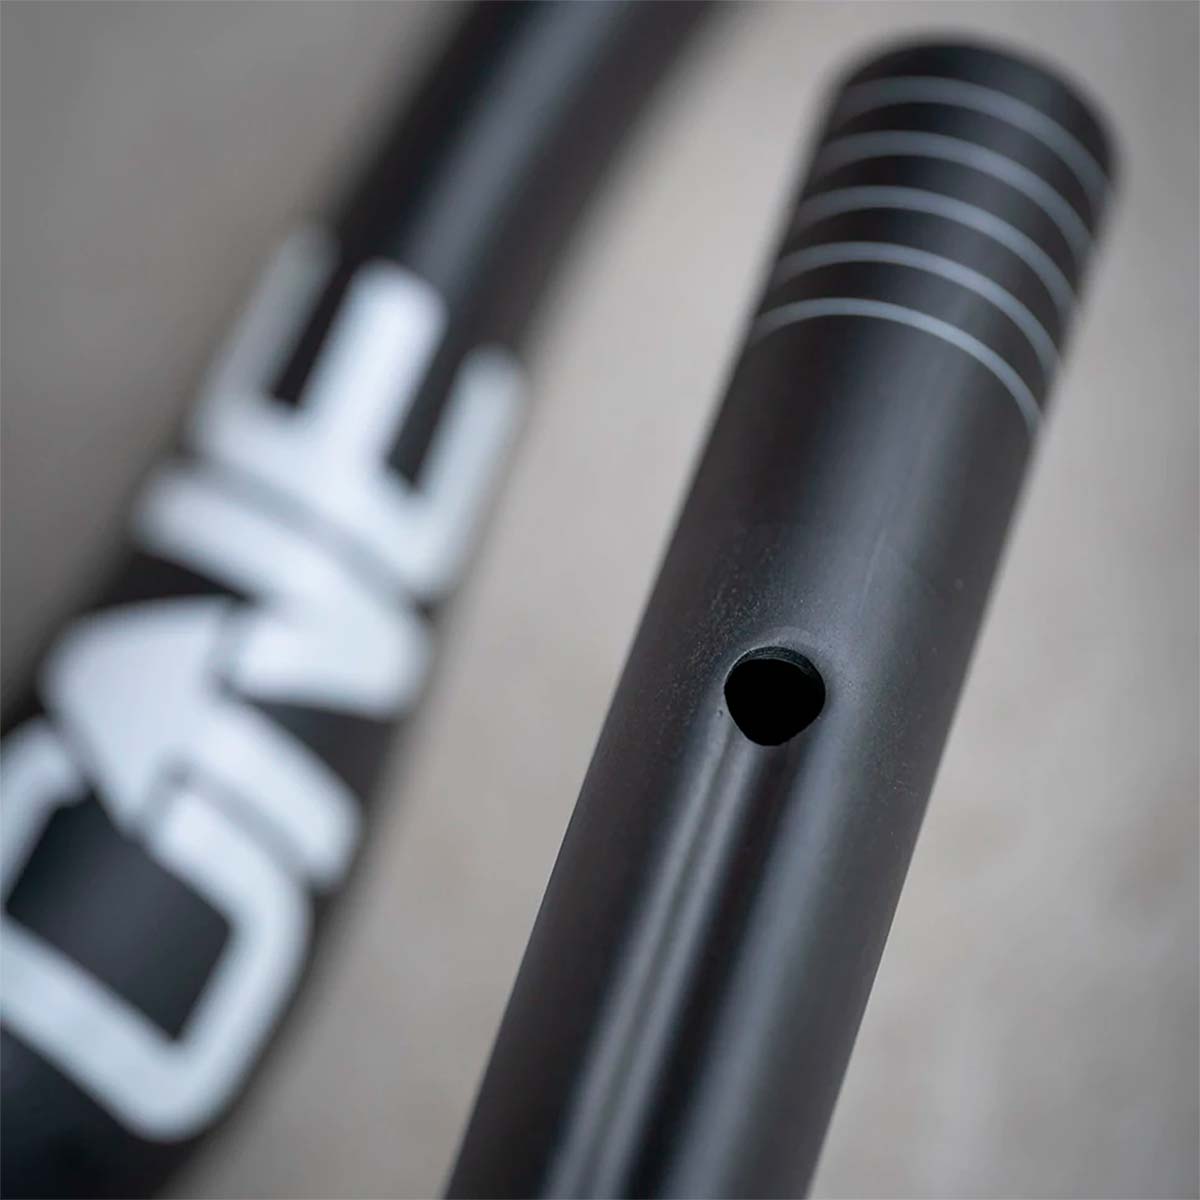 En TodoMountainBike: OneUp Components presenta el E-Bar, un manillar de carbono específico para bicicletas eléctricas